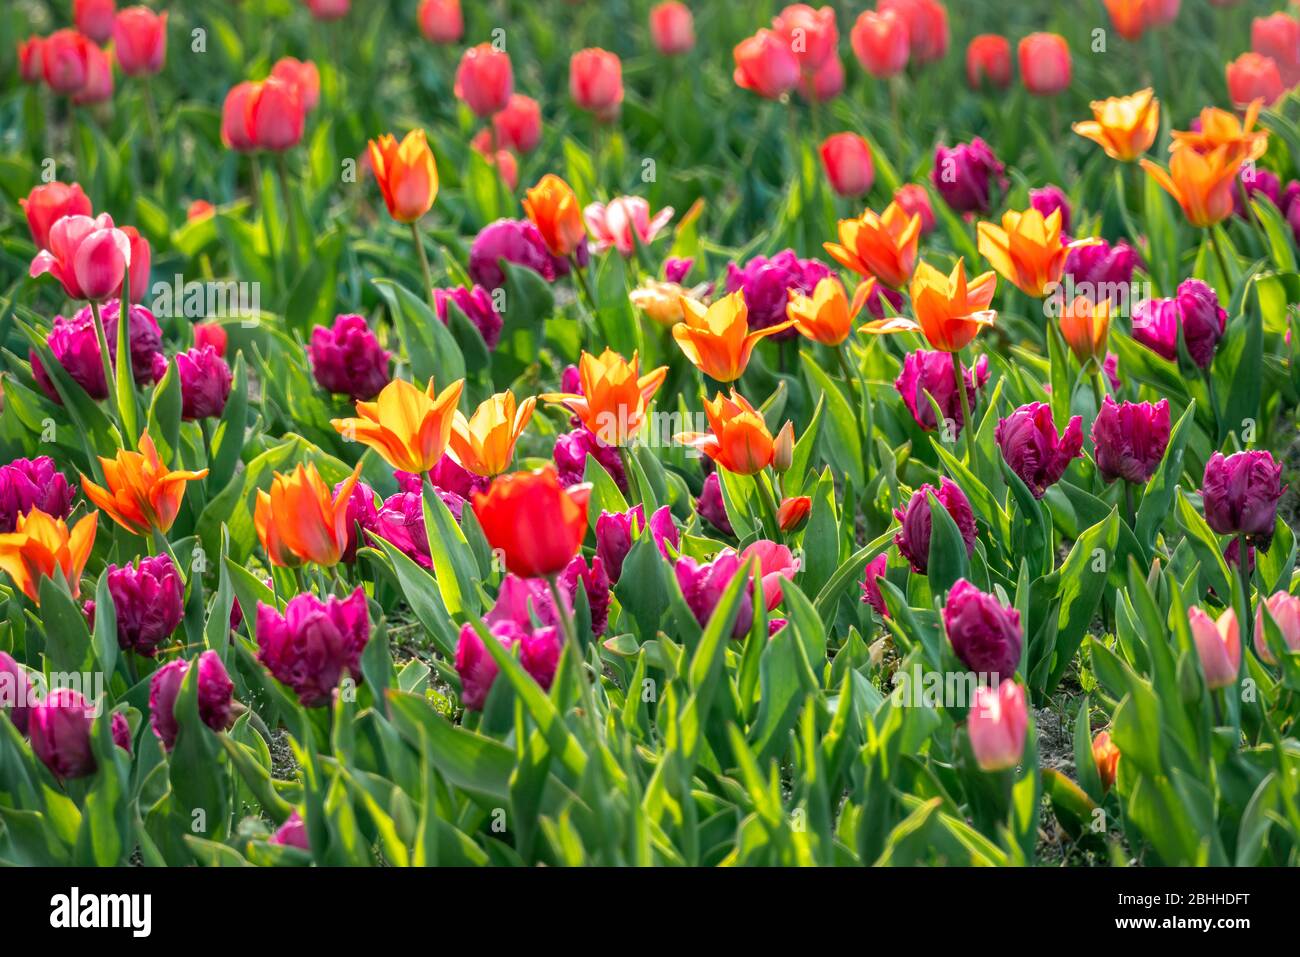 Splendido letto multicolore con tulipani viola, rossi e gialli al sole Foto Stock